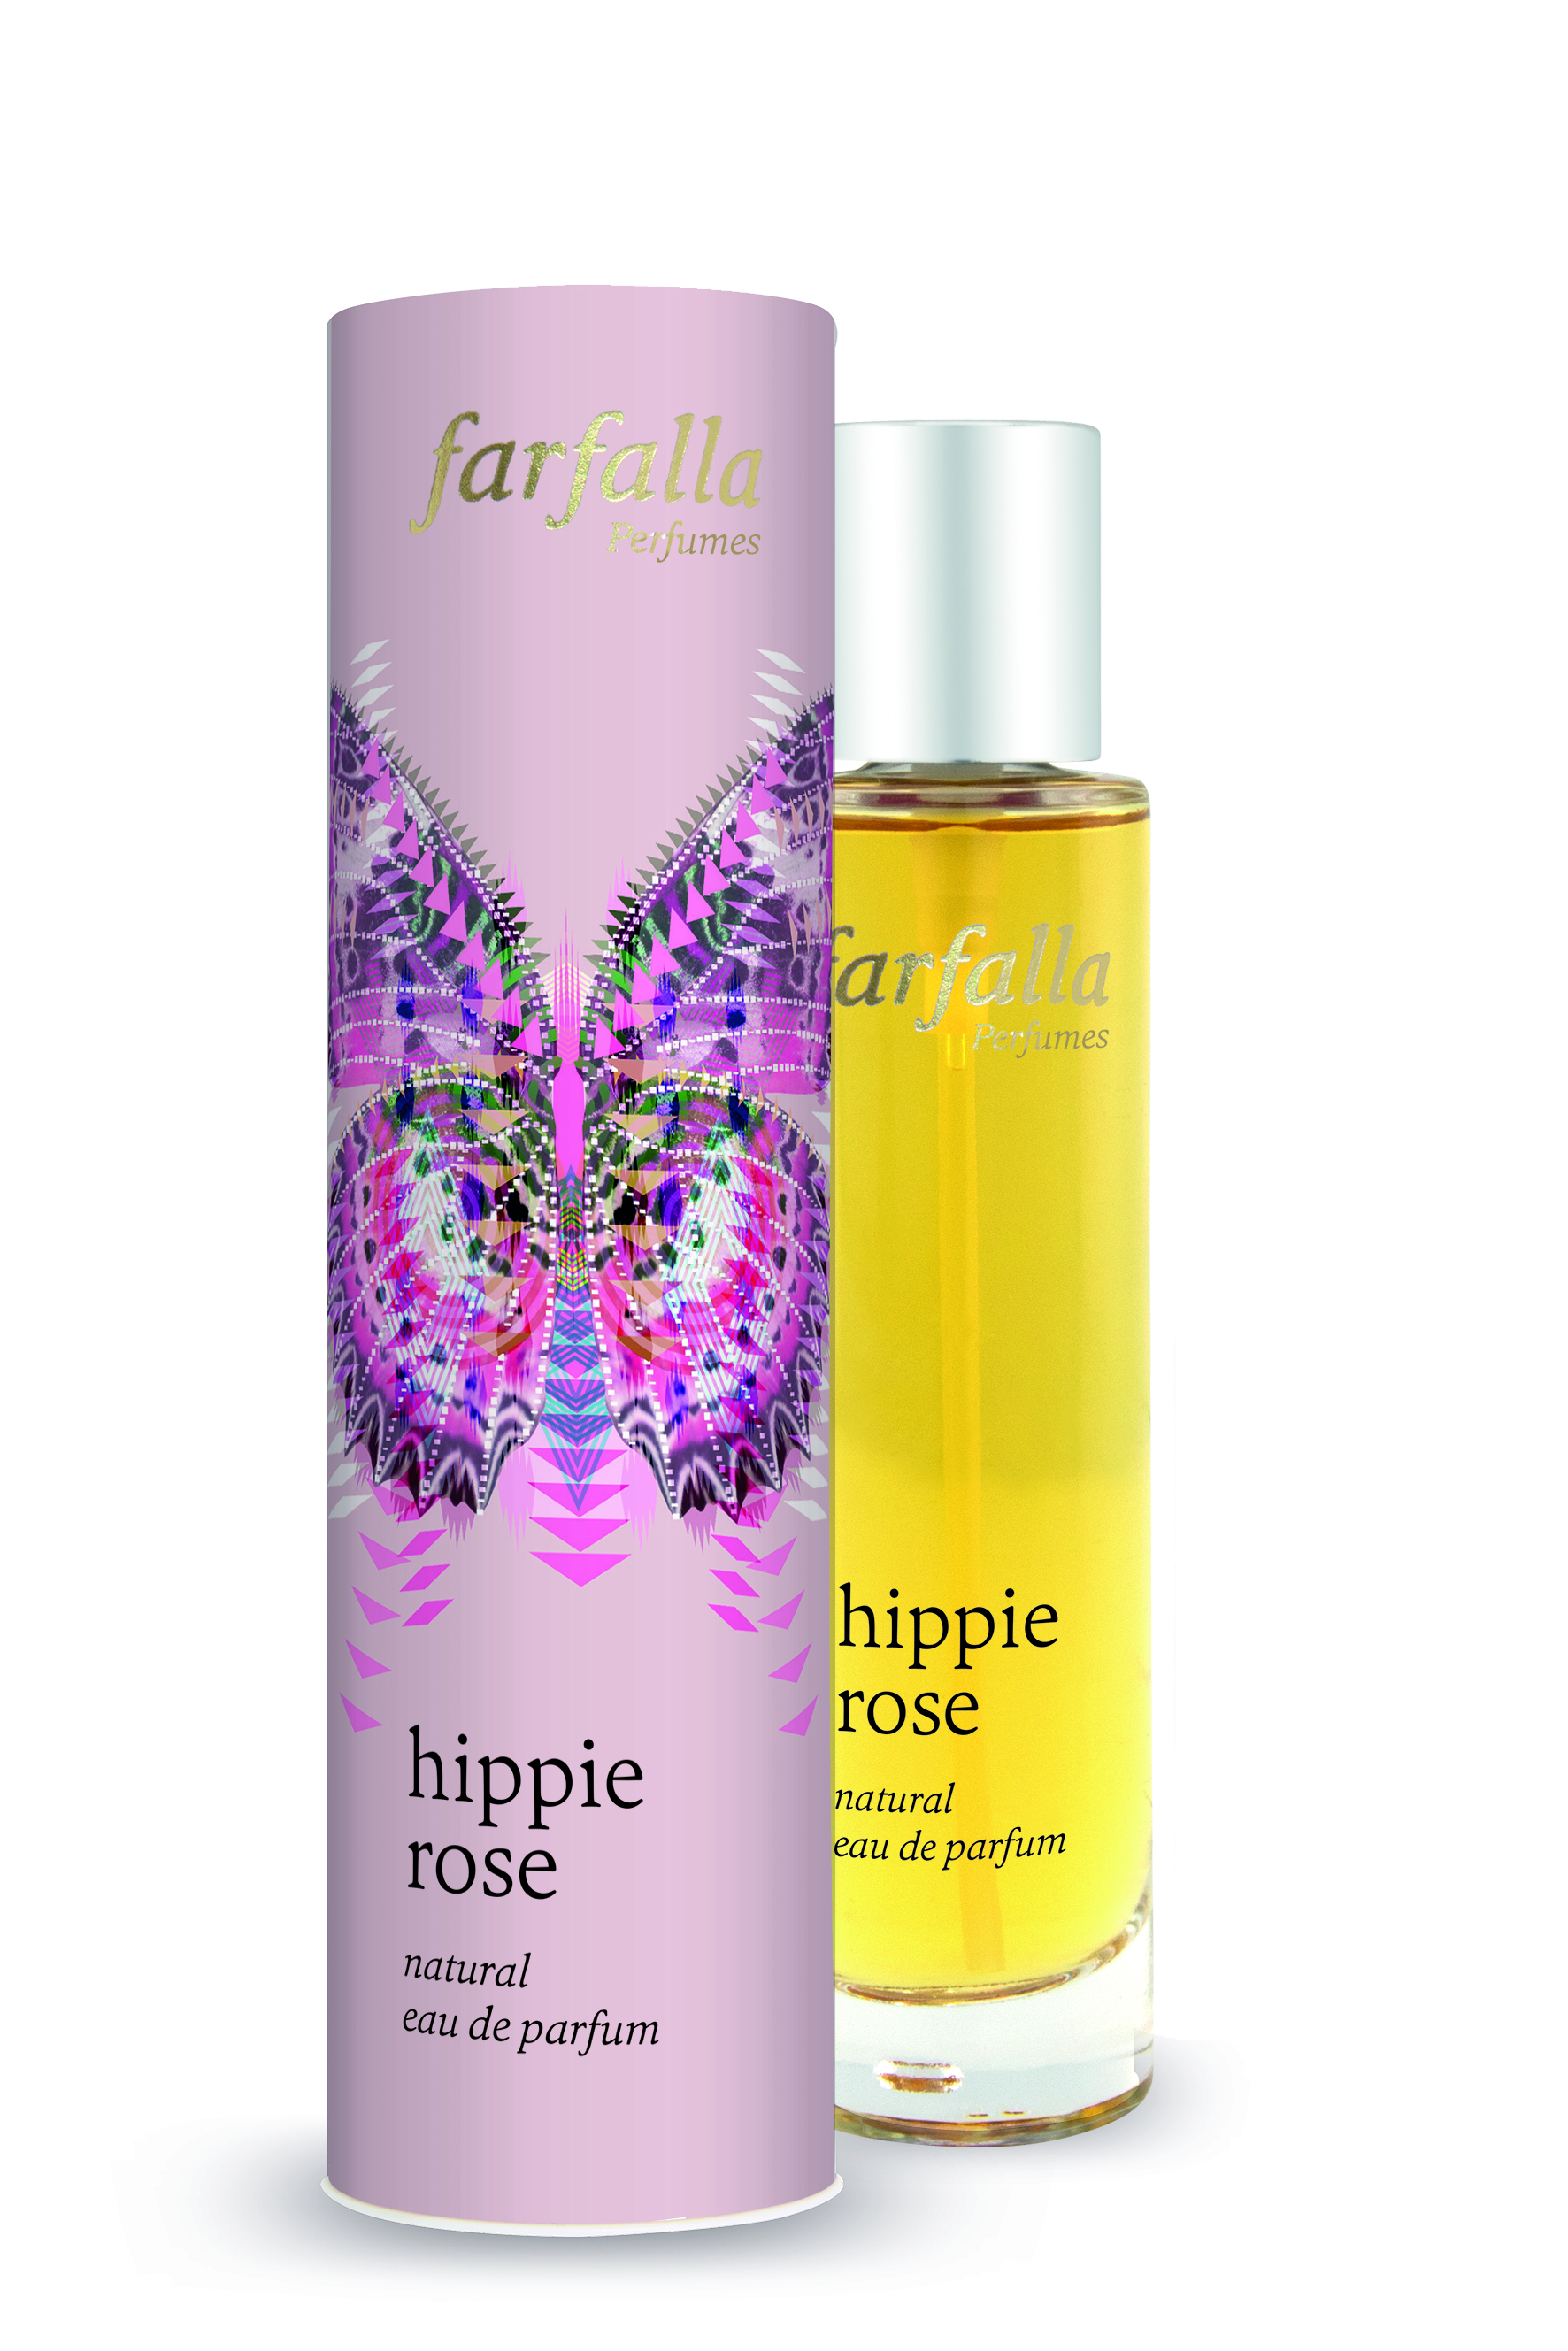 Farfalla Hippie Rose Natural Eau de Parfum 50ml